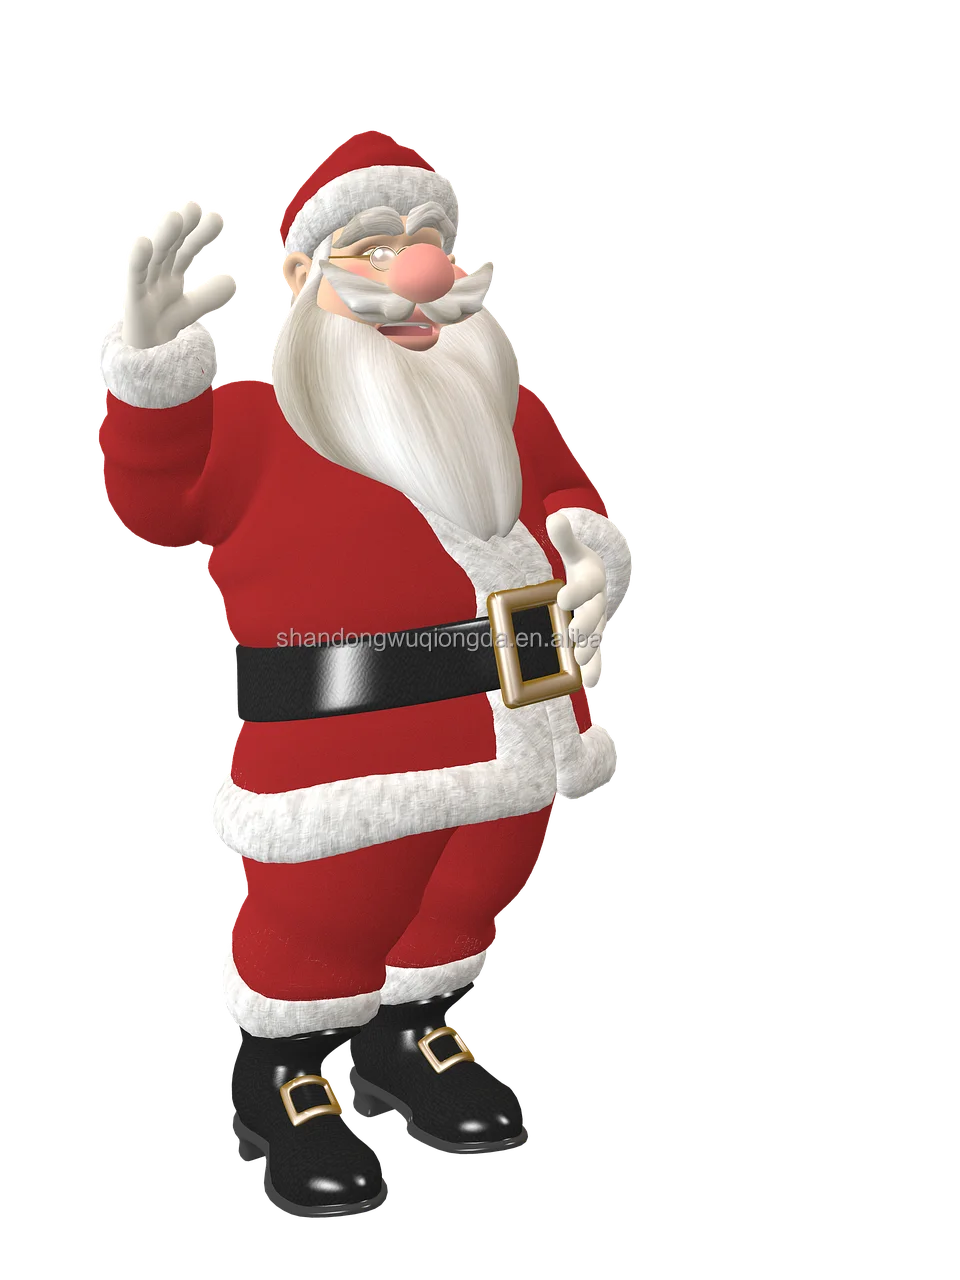 Великолепная фигура Санта Клауса с прекрасной отделкой и деталями